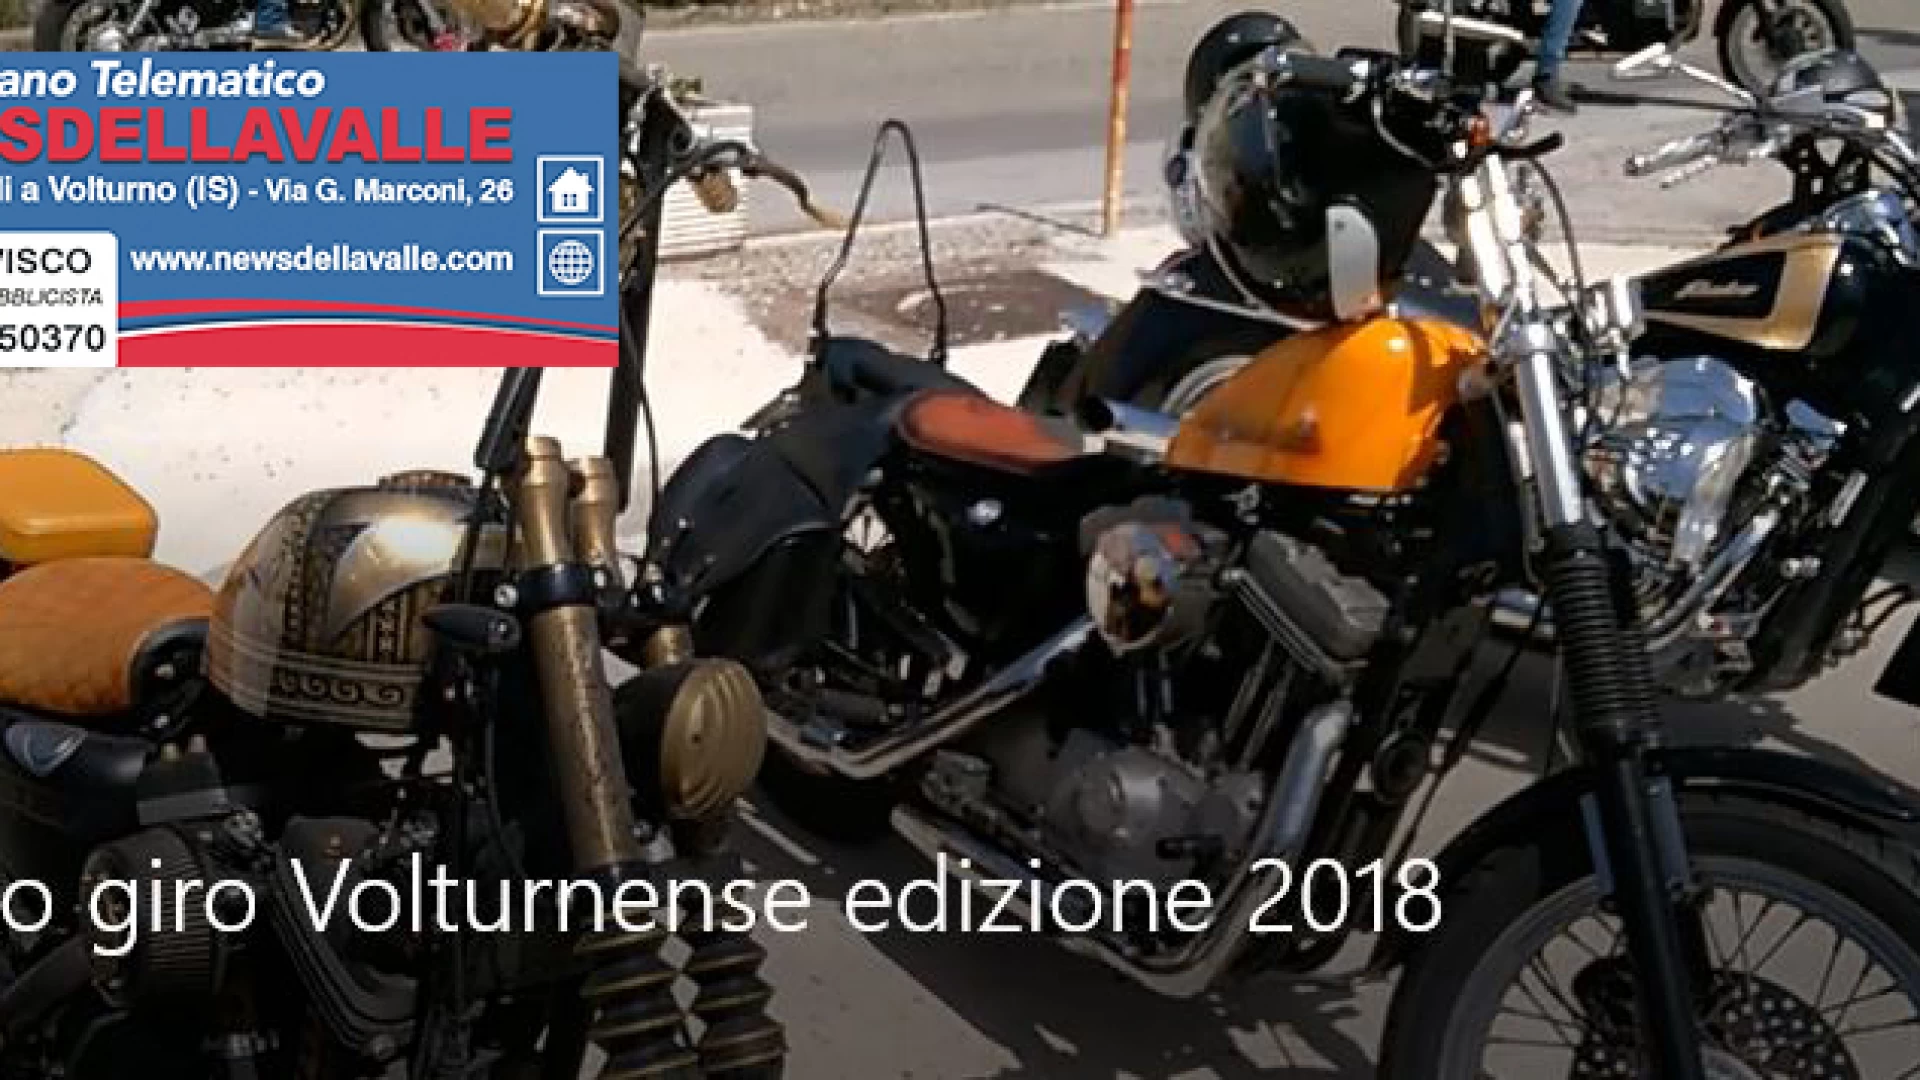 Motogiro Volturnense, Cerro ha accolto motocislisti provenienti da tutta Italia. Grande il lavoro del Moto Club Falco. Evento di successo. Guarda il video